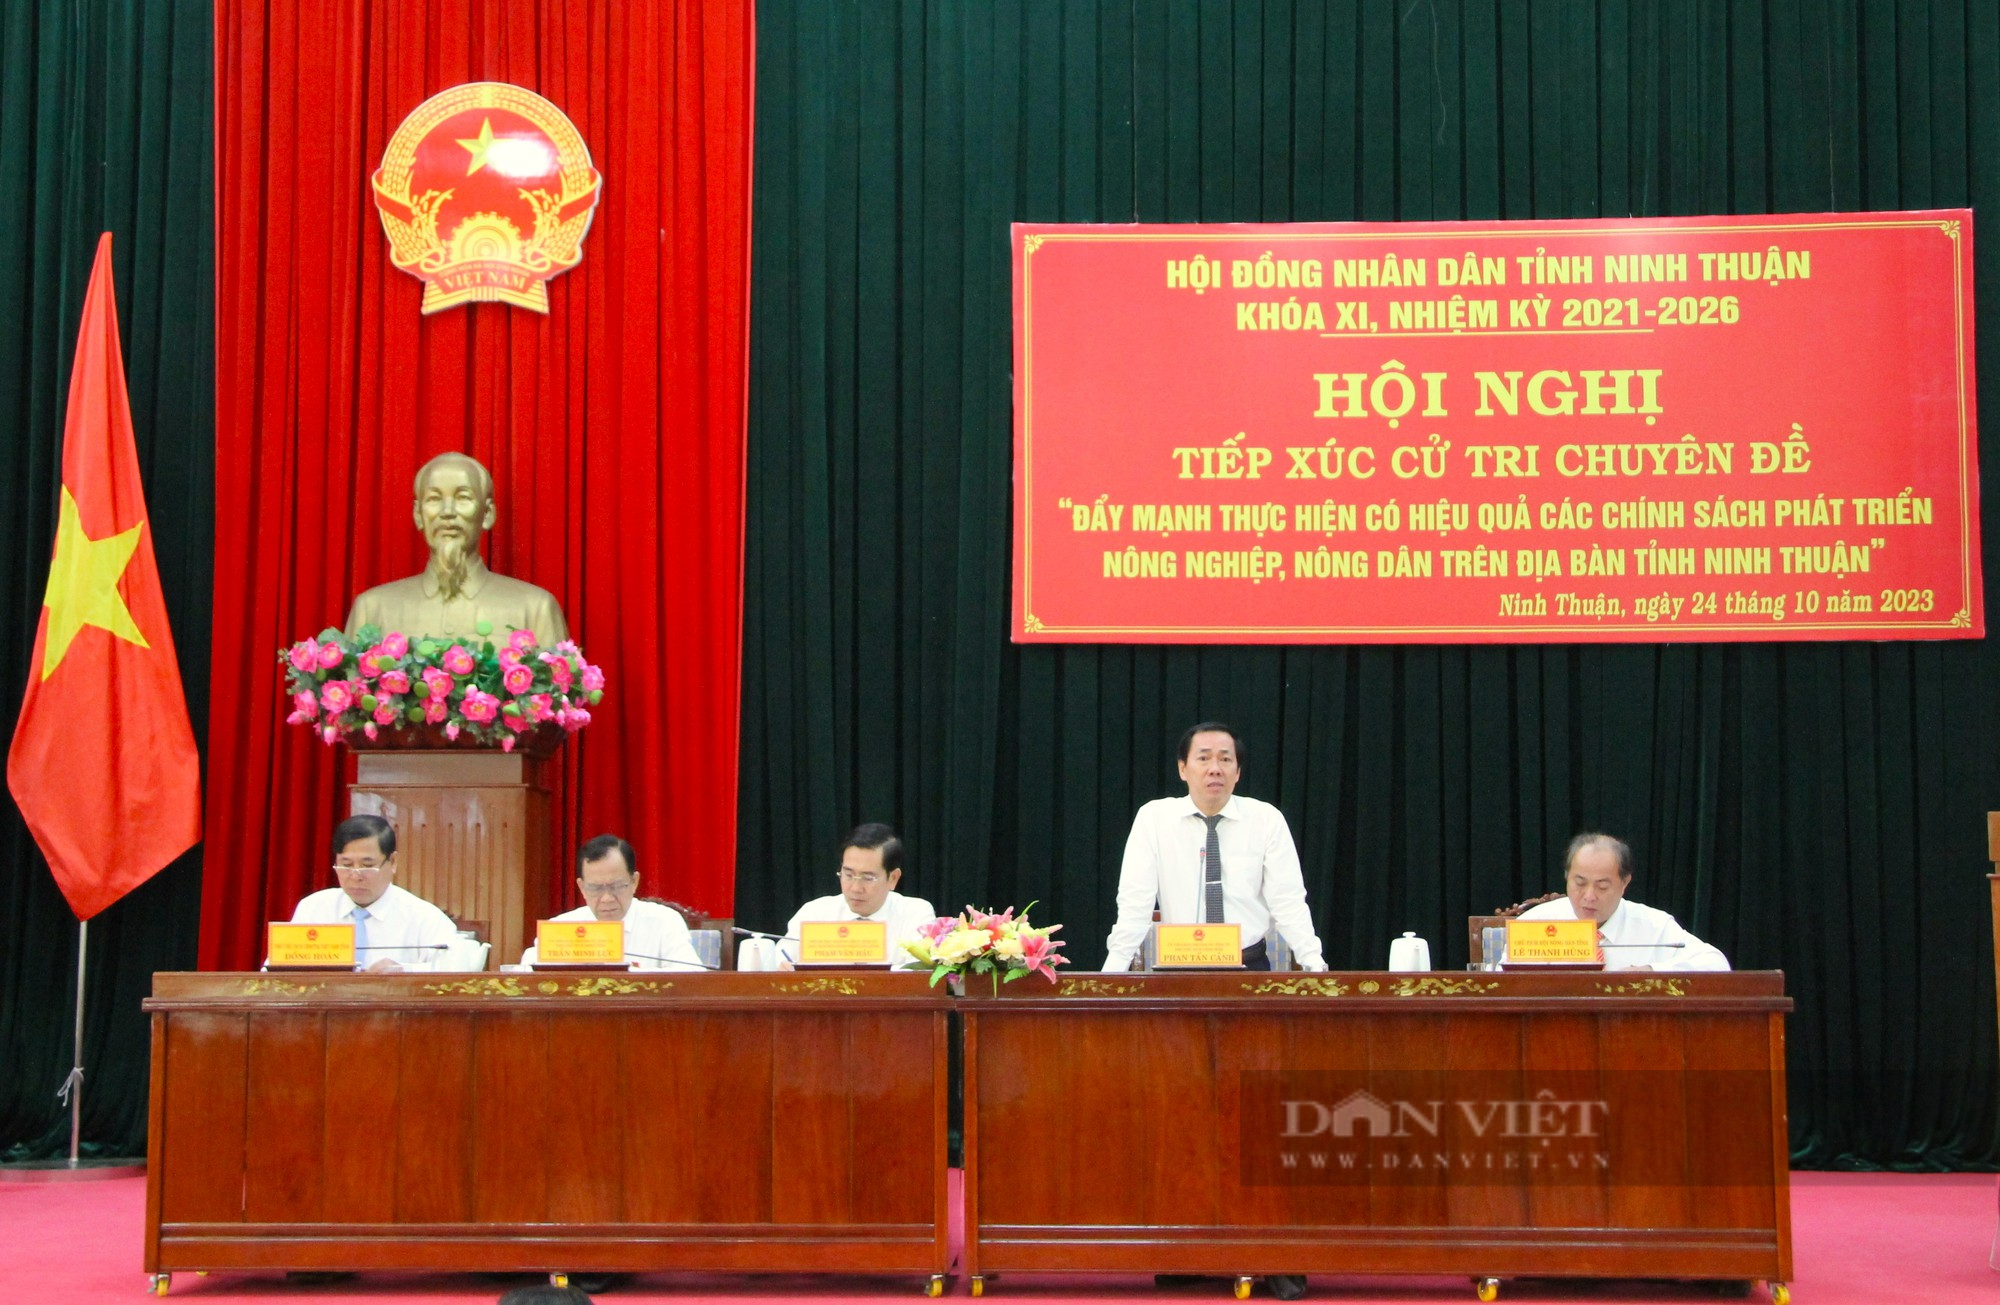 Tiếp xúc cử tri chuyên đề nông nghiệp, nông dân tại Ninh Thuận - Ảnh 1.